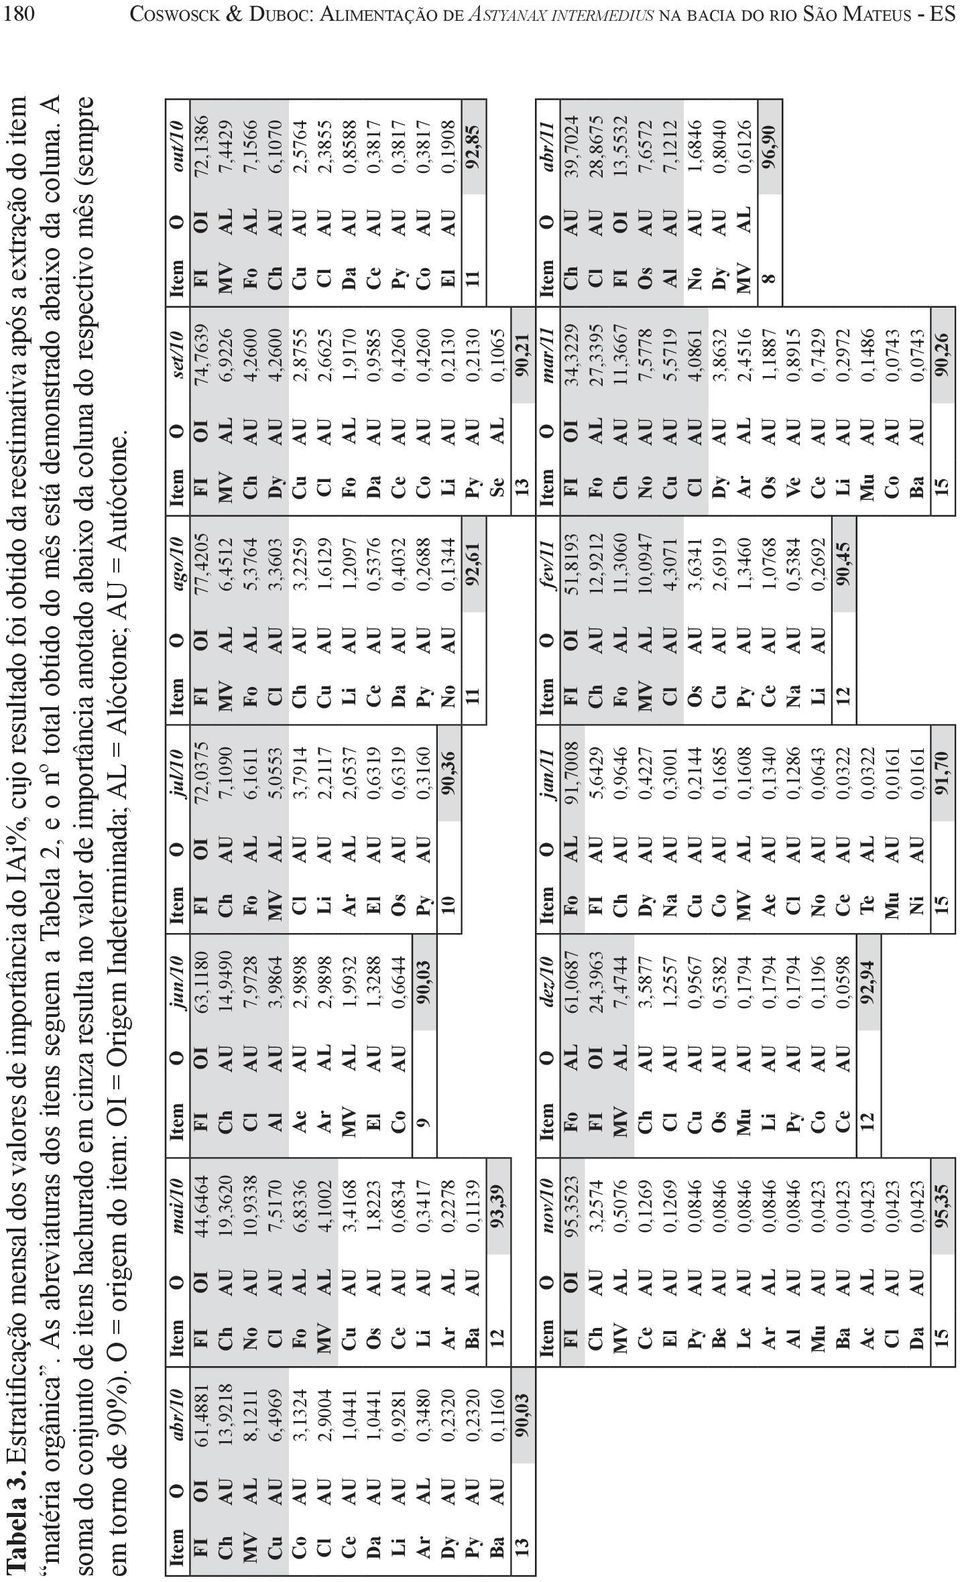 As abreviaturas dos itens seguem a Tabela 2, e o nº total obtido do mês está demonstrado abaixo da coluna.